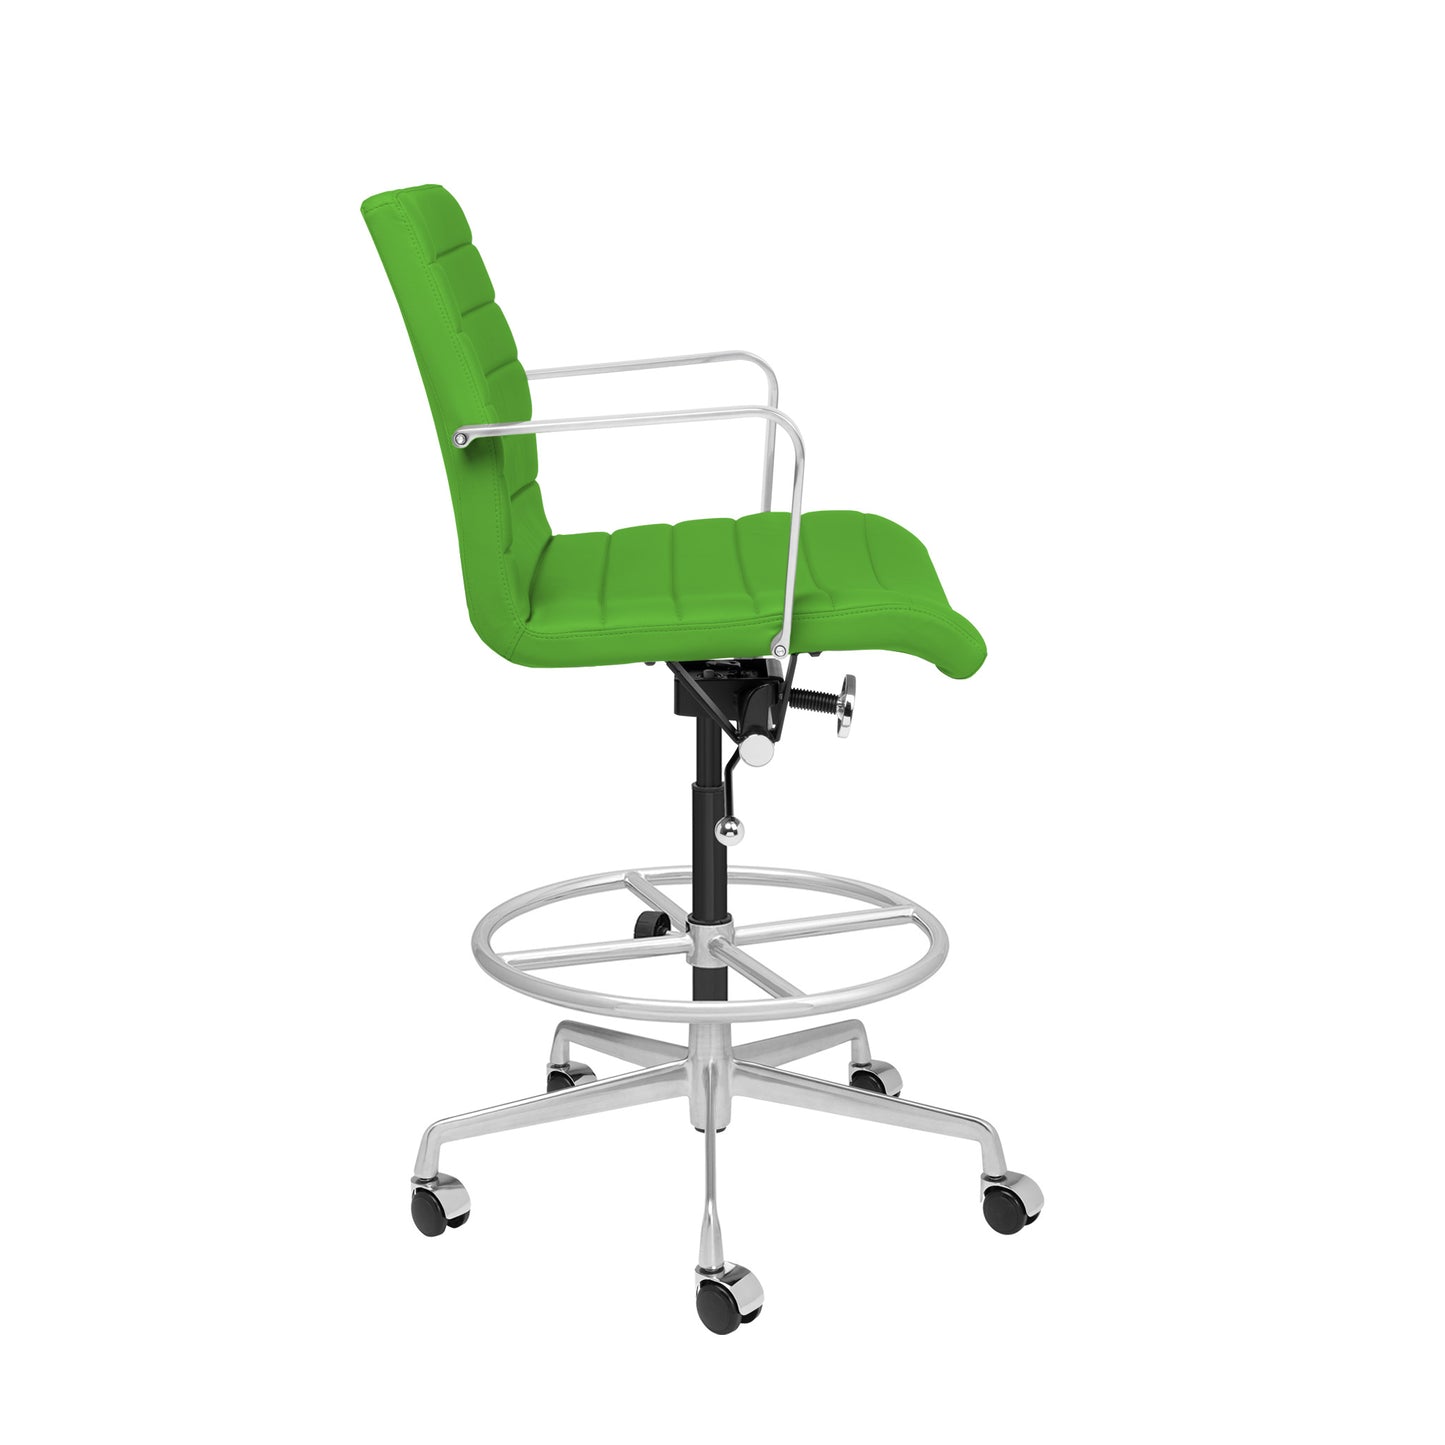 SHIPS MAY 17TH - SOHO II Ribbed Drafting Chair (Green)